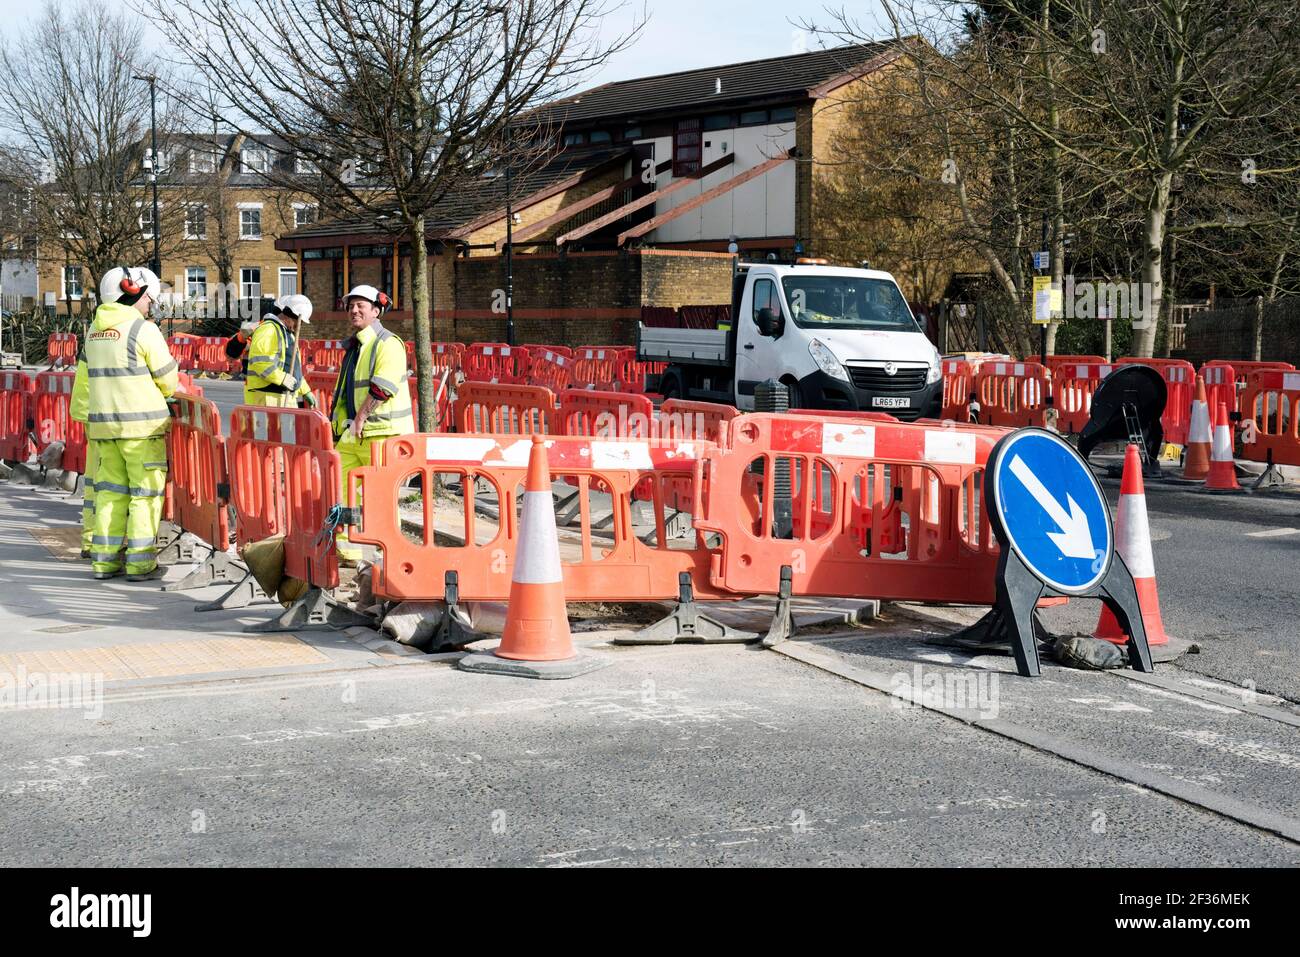 Road lavora con barriere arancioni e operai che costruiscono piste ciclabili Parte del quartiere a basso traffico Drayton Park Highbury Foto Stock